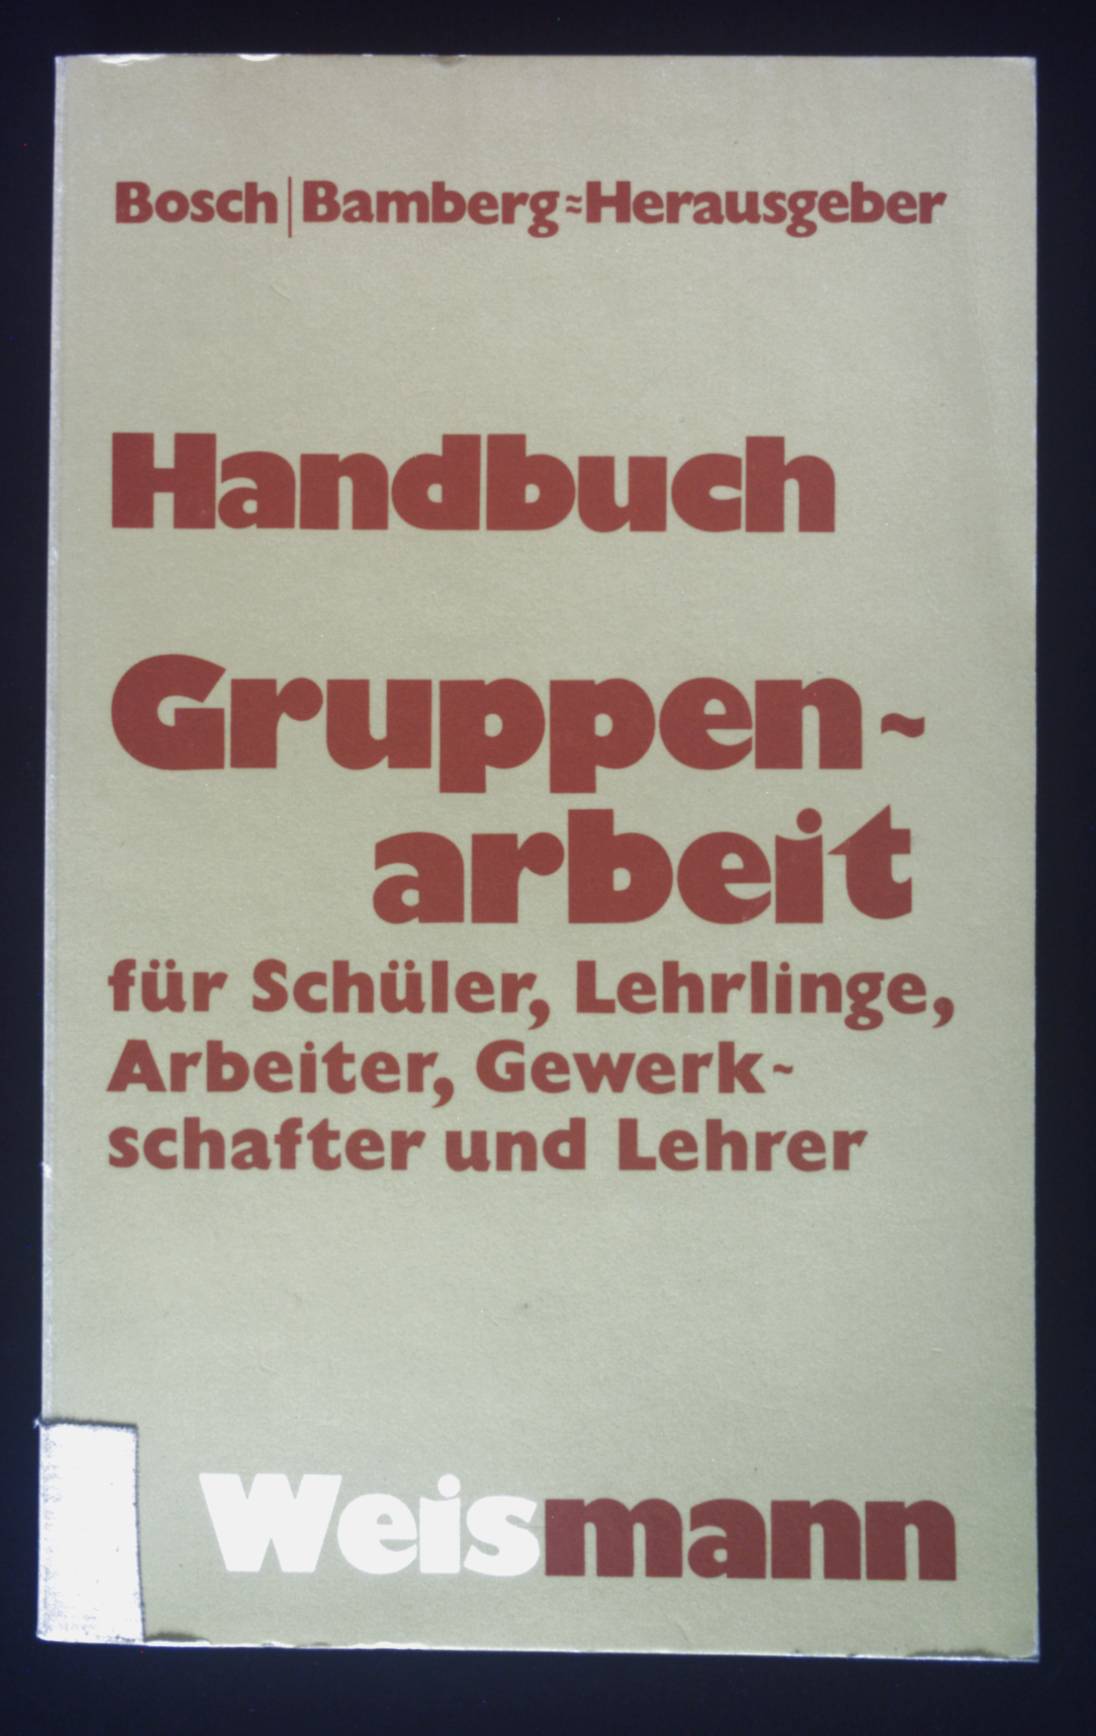 Handbuch Gruppenarbeit : für Lehrlinge, Schüler, Arbeiter, Gewerkschaften, Lehrer. - Bosch, Manfred